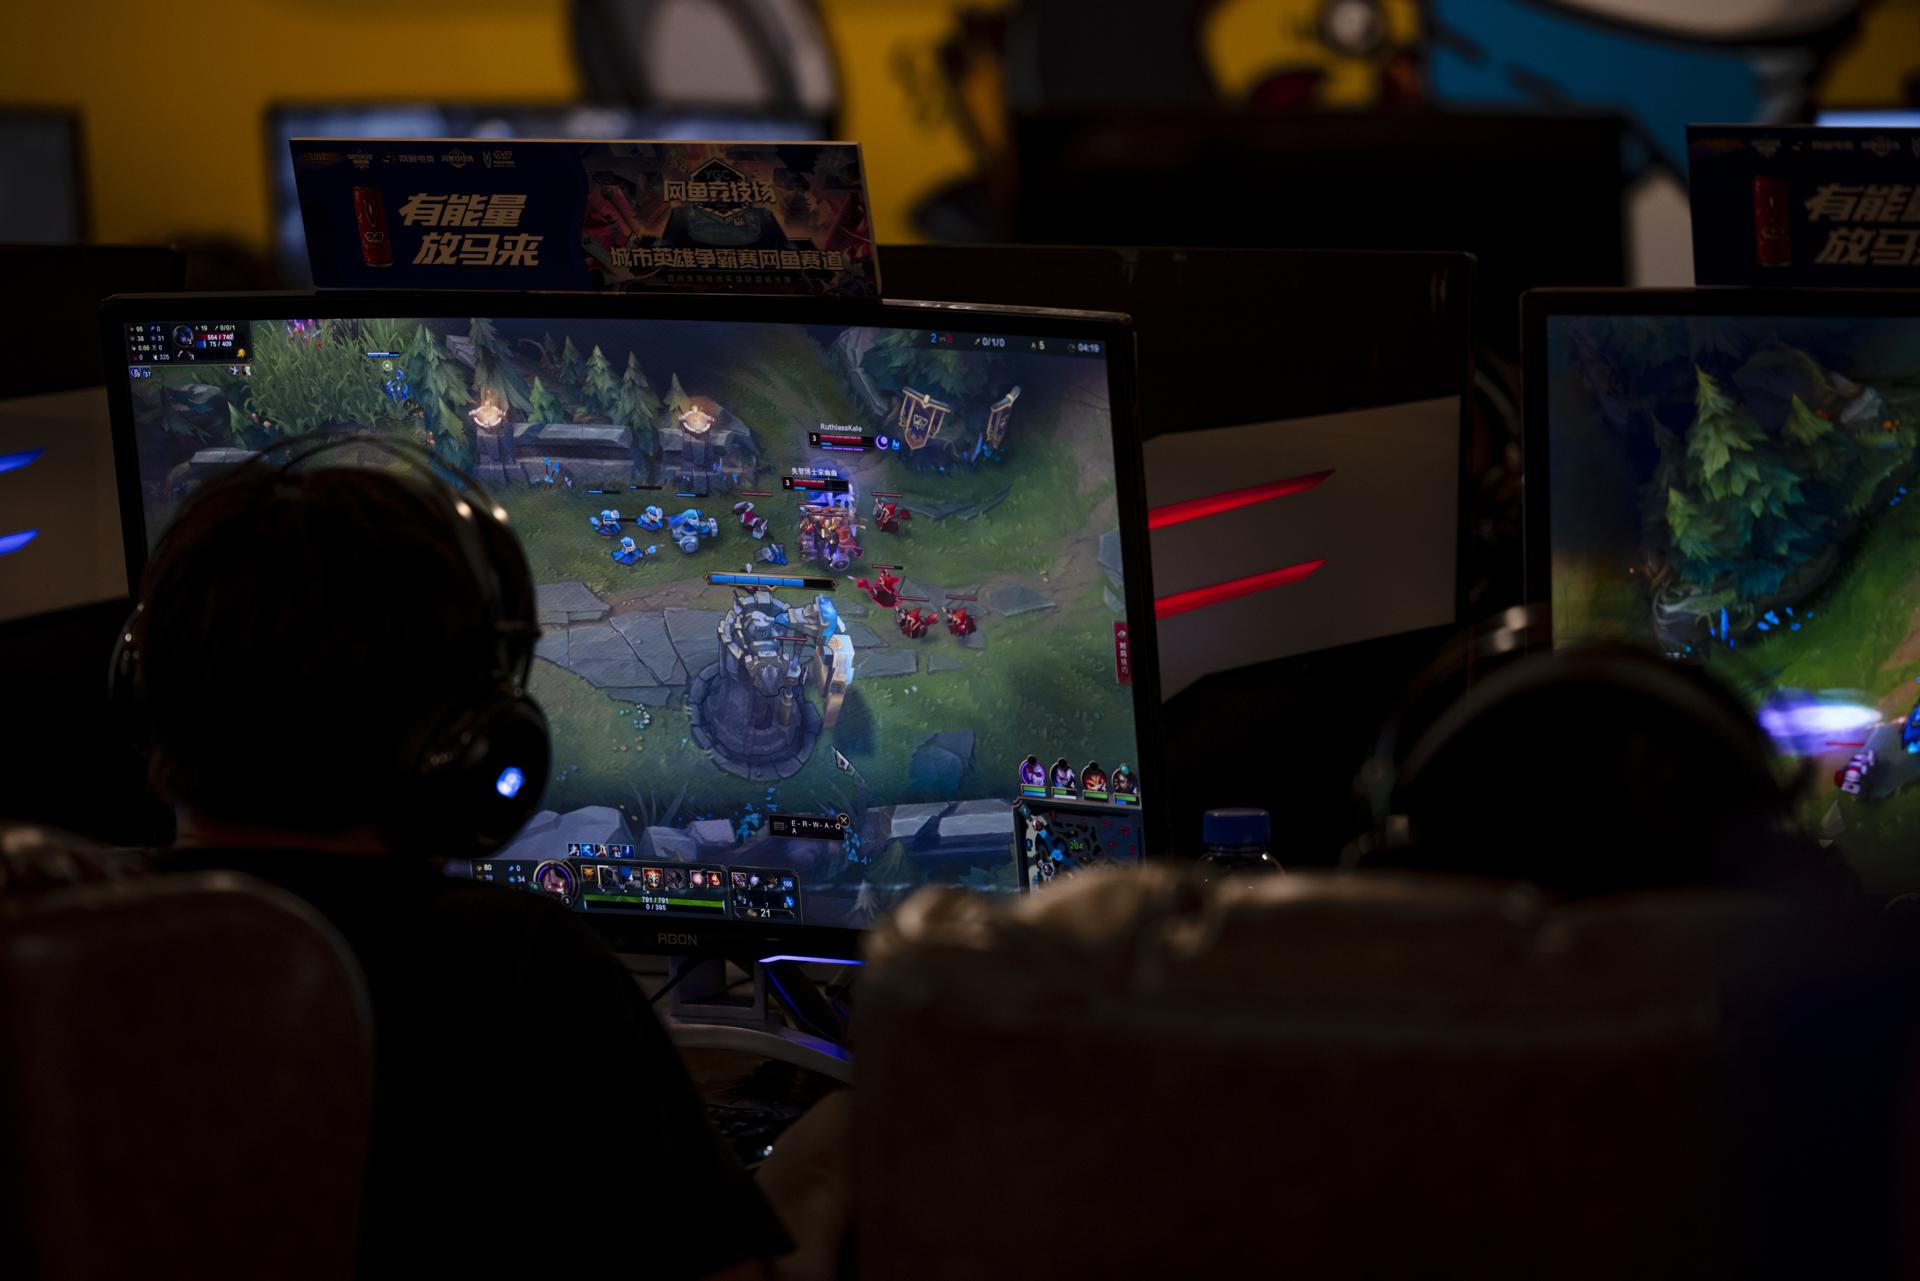 Unos jugadores frente a su ordenador, en una imagen de archivo. EFE/ALEX PLAVEVSKI